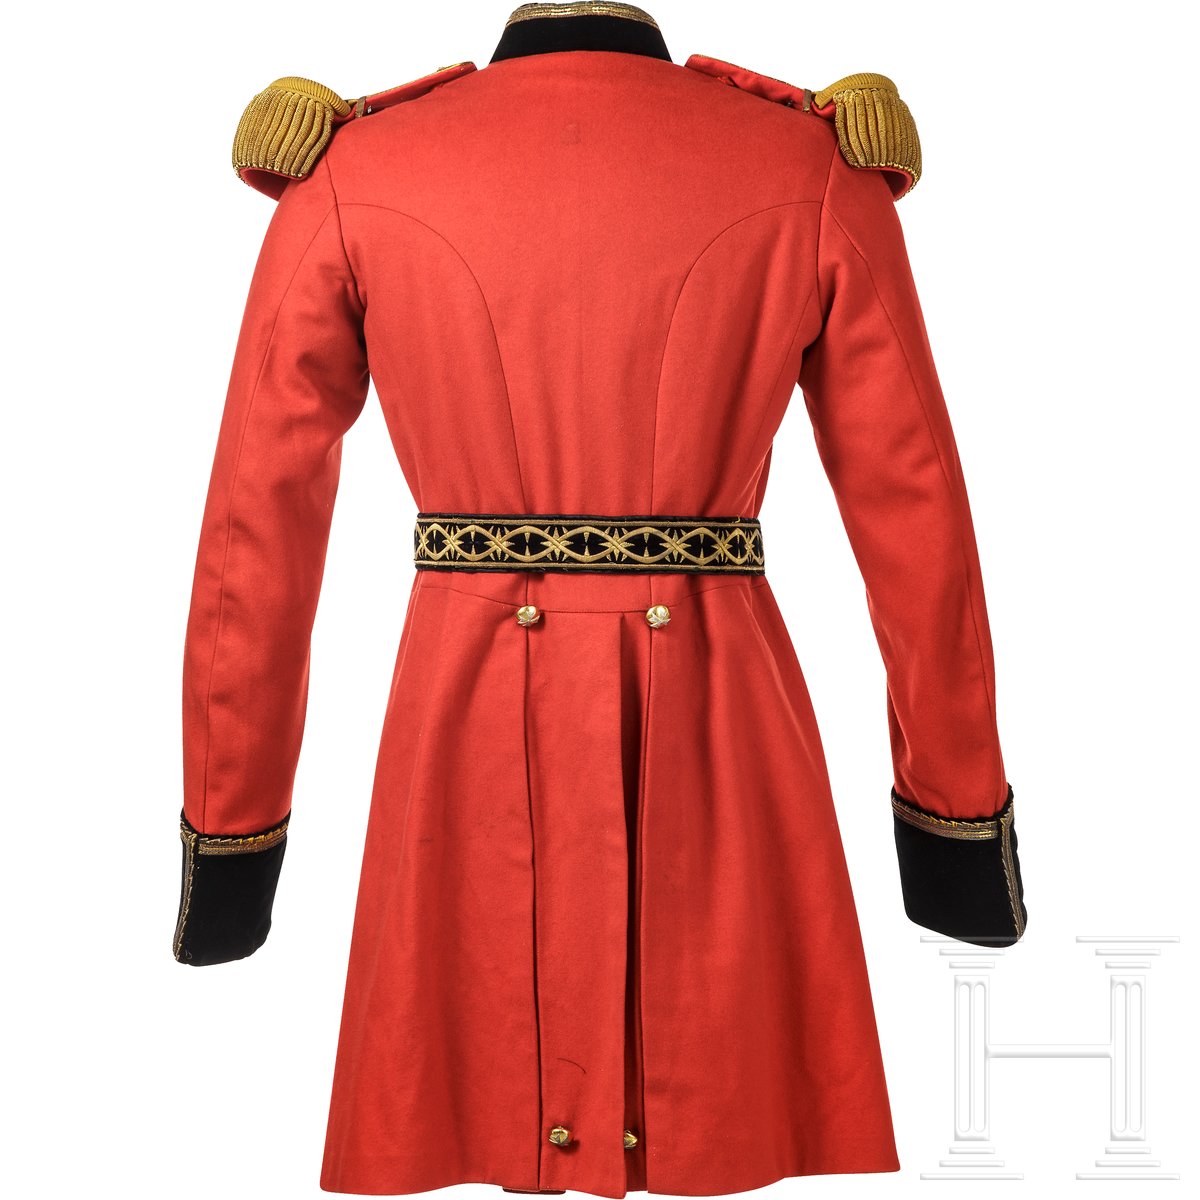 Uniformensemble eines Angehörigen des Souveränen Malteserordens, 20. Jhdt. - Image 5 of 5